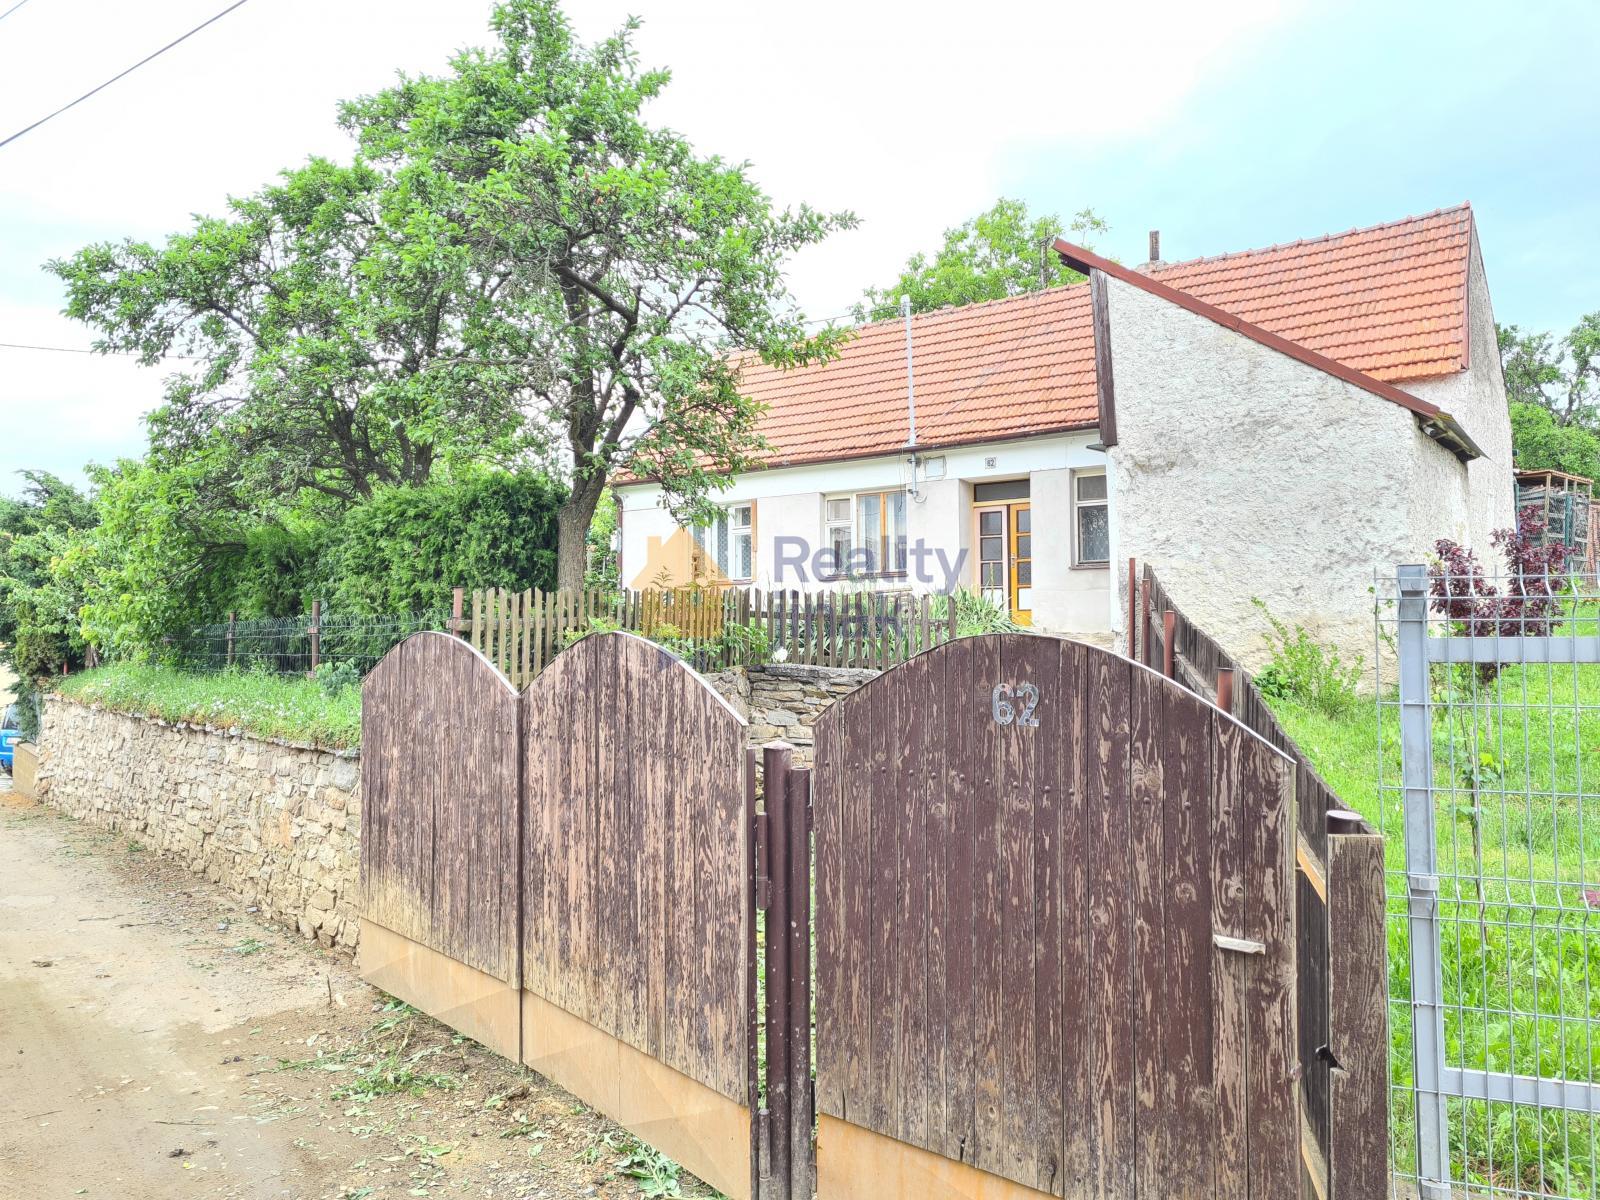 Prodej rodinného domu 2+1 v obci Ketkovice, 77 m2, pozemek 1065 m2, studna